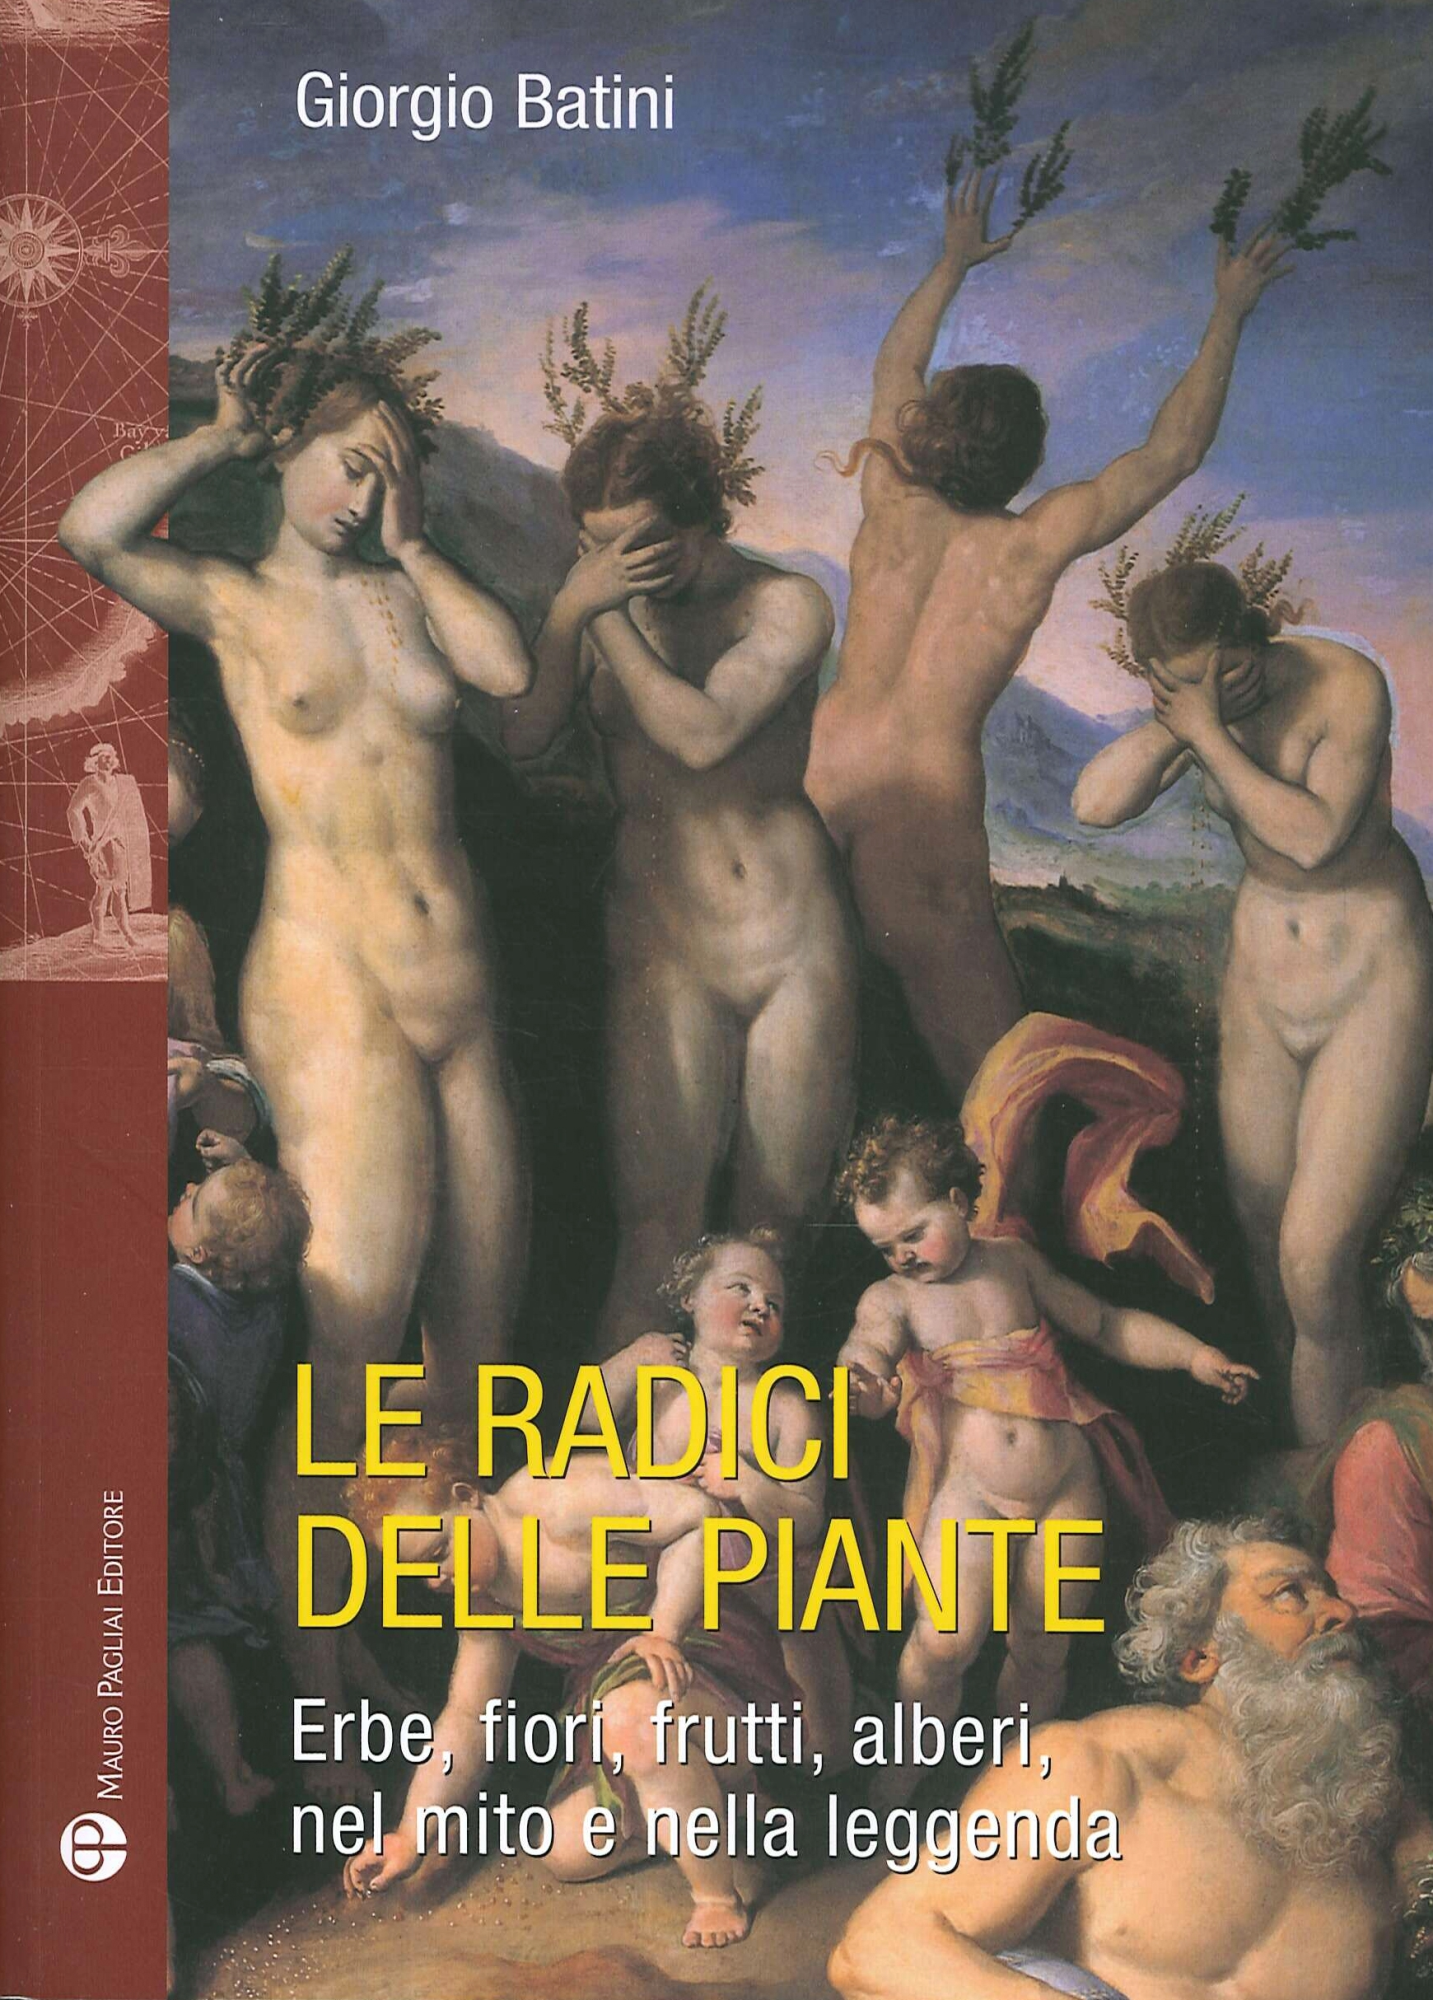 Libri Giorgio Batini - Radici Delle Piante NUOVO SIGILLATO, EDIZIONE DEL 28/05/2020 SUBITO DISPONIBILE